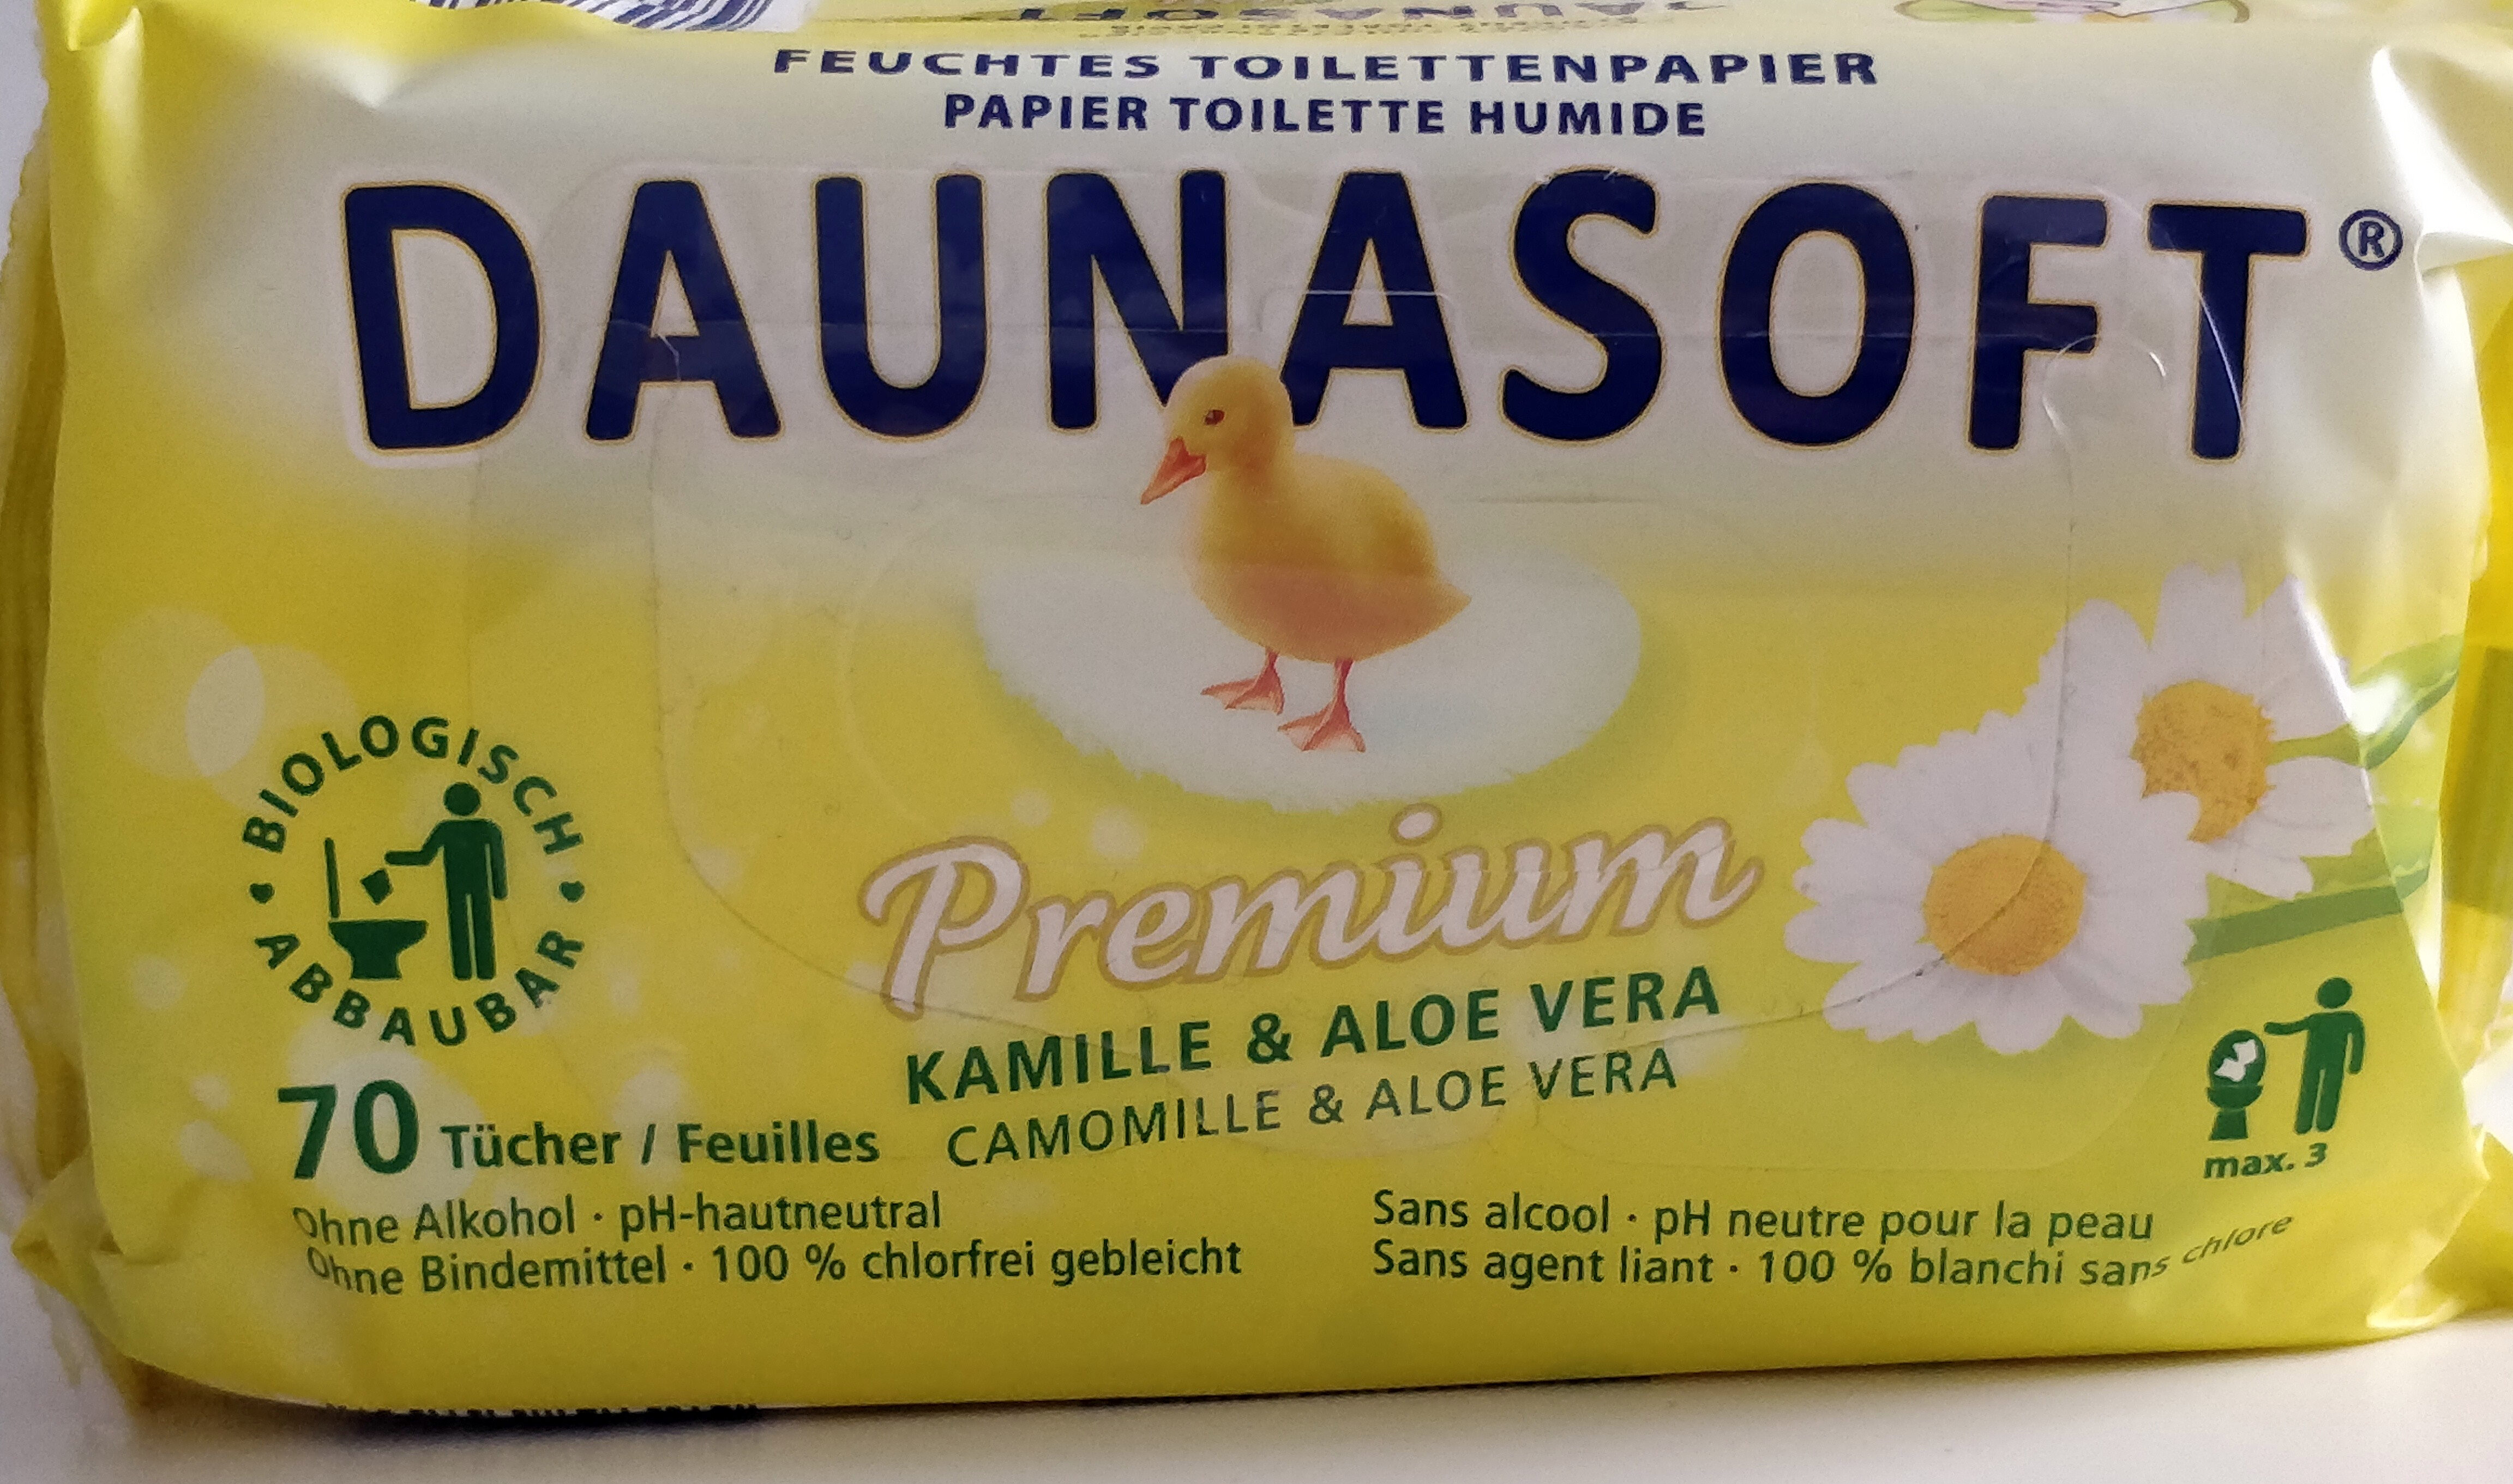 papier toilette humide premium camomille & aloe vera - Produto - fr